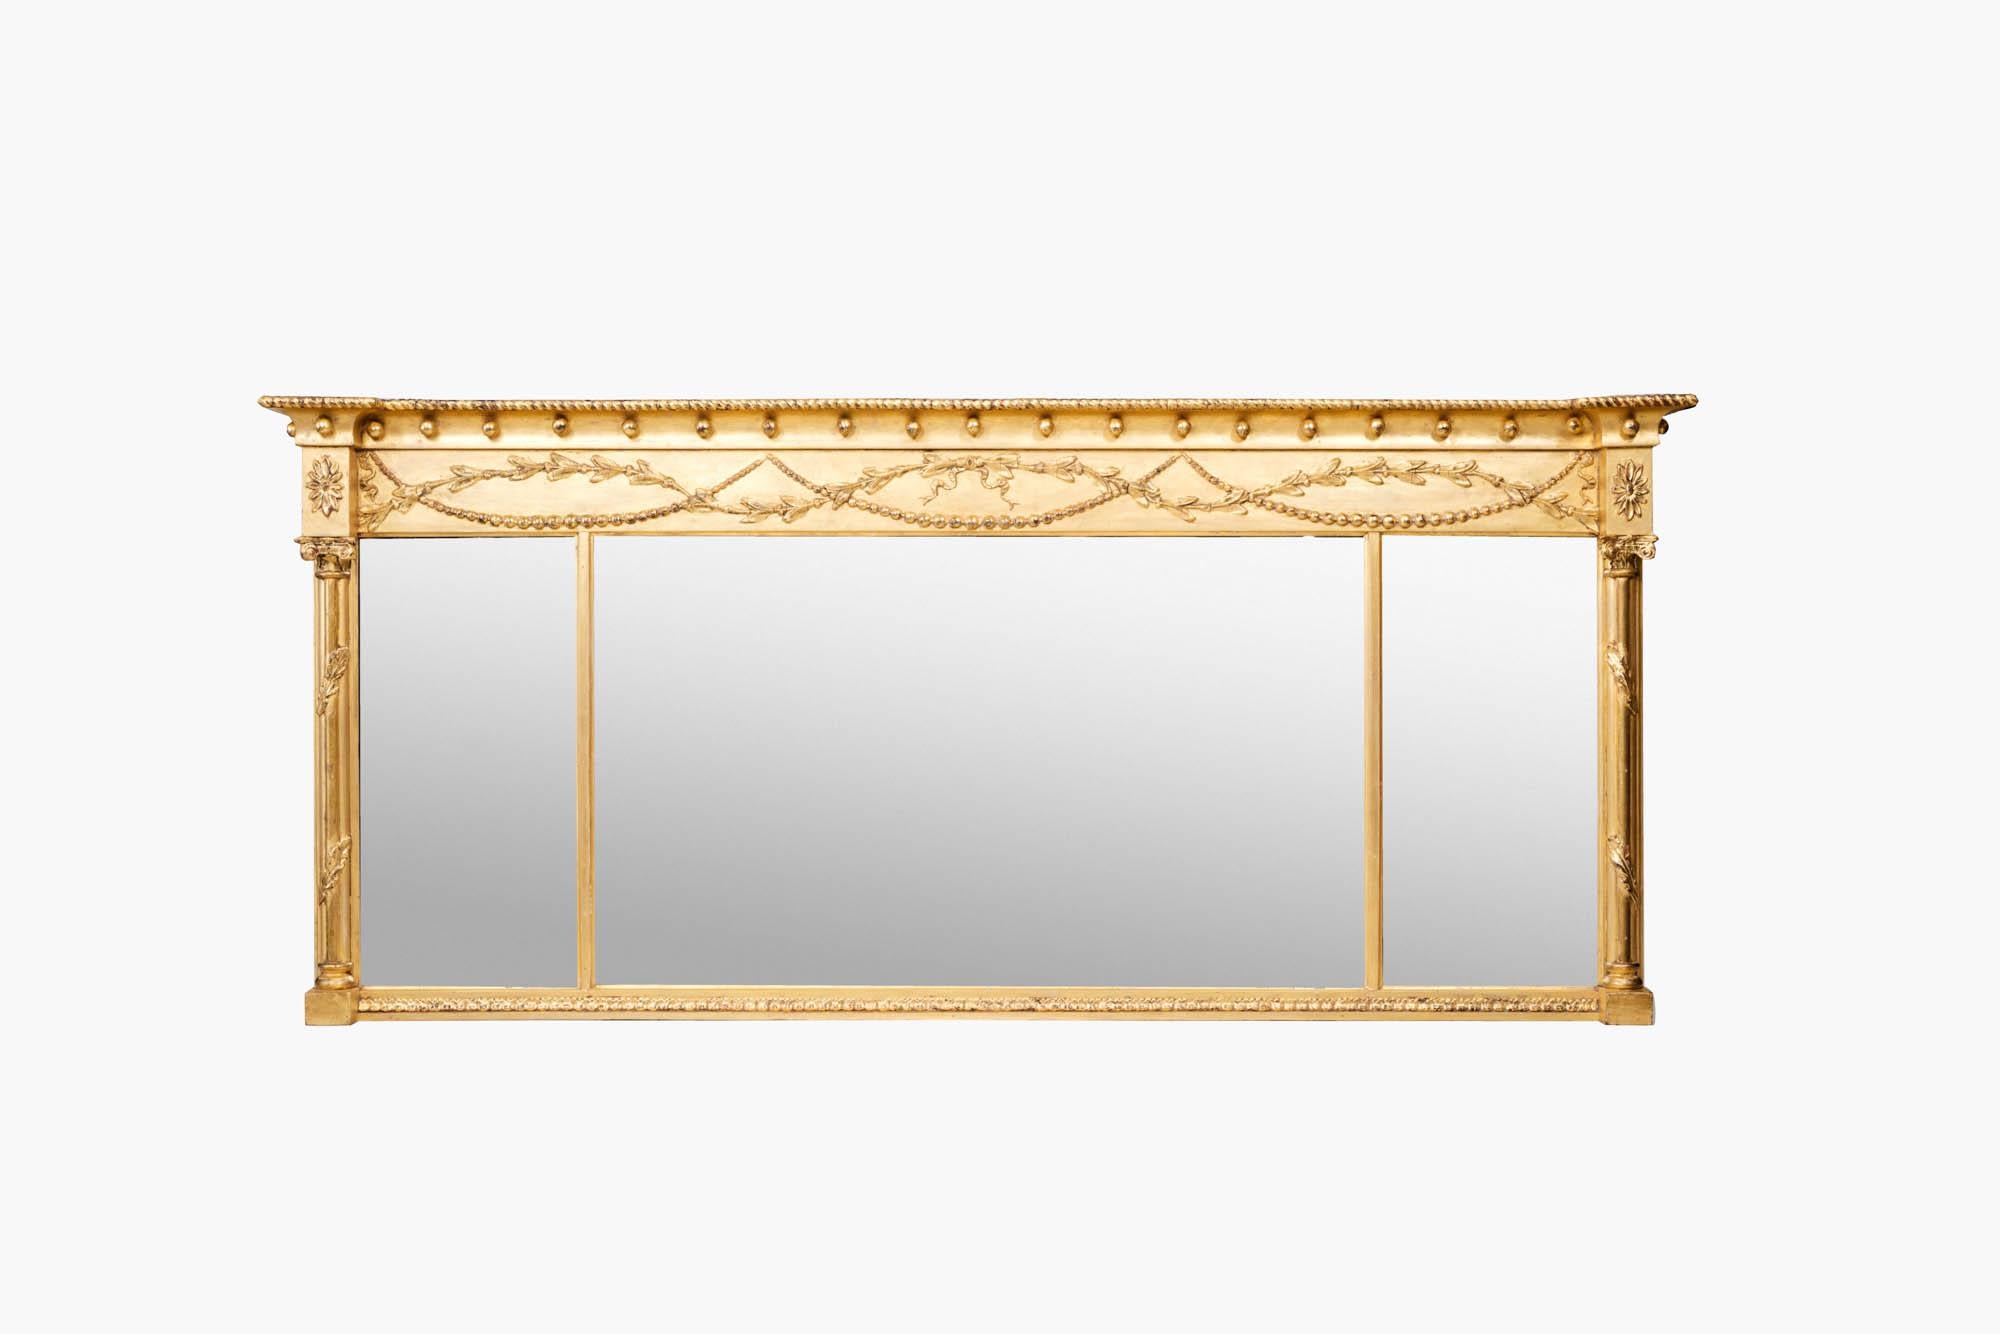 Regency-Spiegel aus dem 19. Jahrhundert mit vergoldeten Fächern. Dieses Stück hat eine rechteckige Form und wird auf beiden Seiten von Säulen im klassischen Stil flankiert, deren Kapitelle mit Schnitzereien verziert sind. Beide Säulen sind mit einer